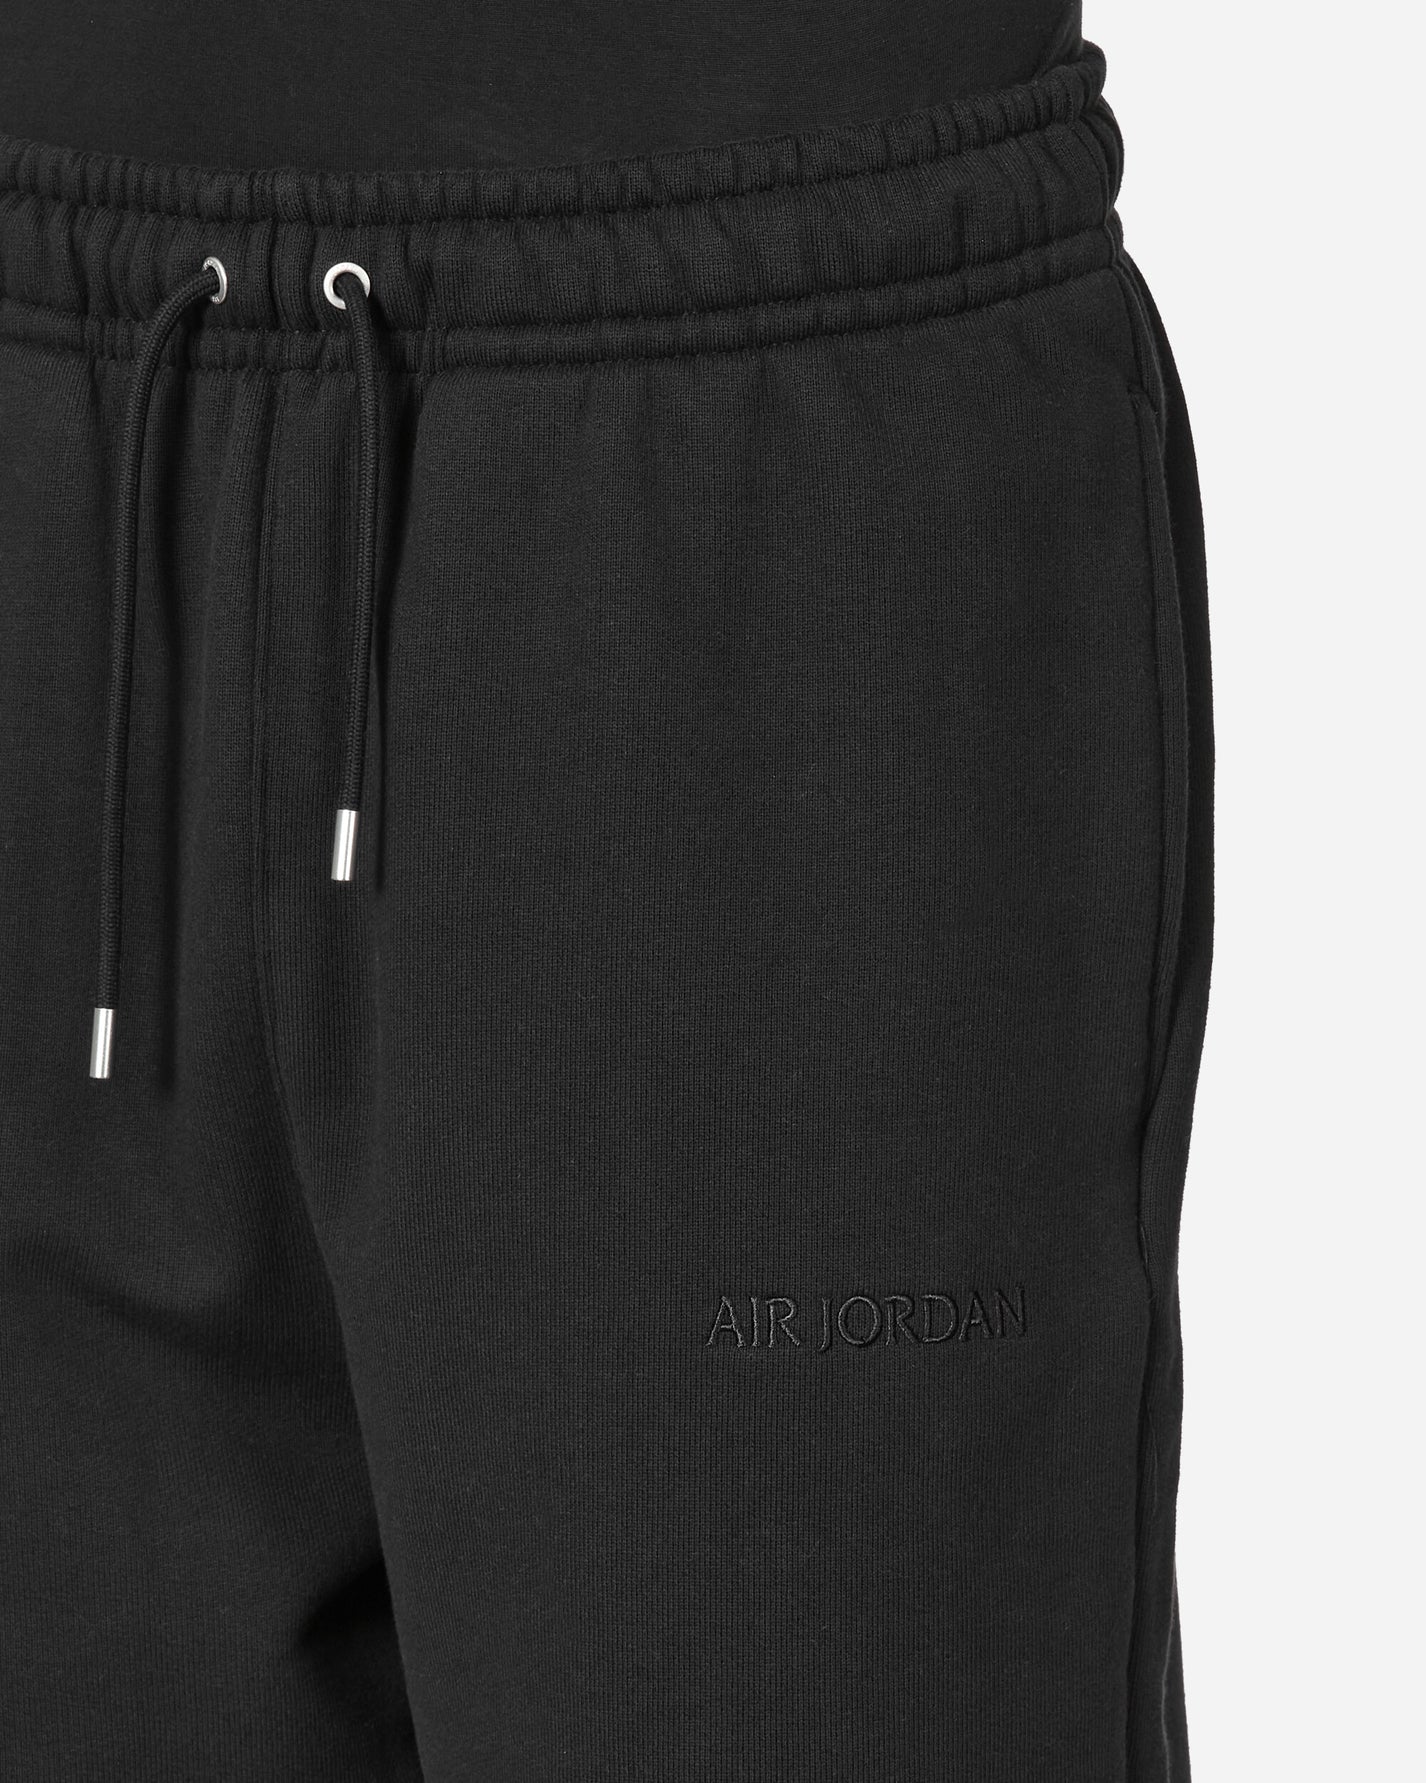 Nike Jordan Air Jdn Wm Flc Short Black Shorts Short FJ0700-010